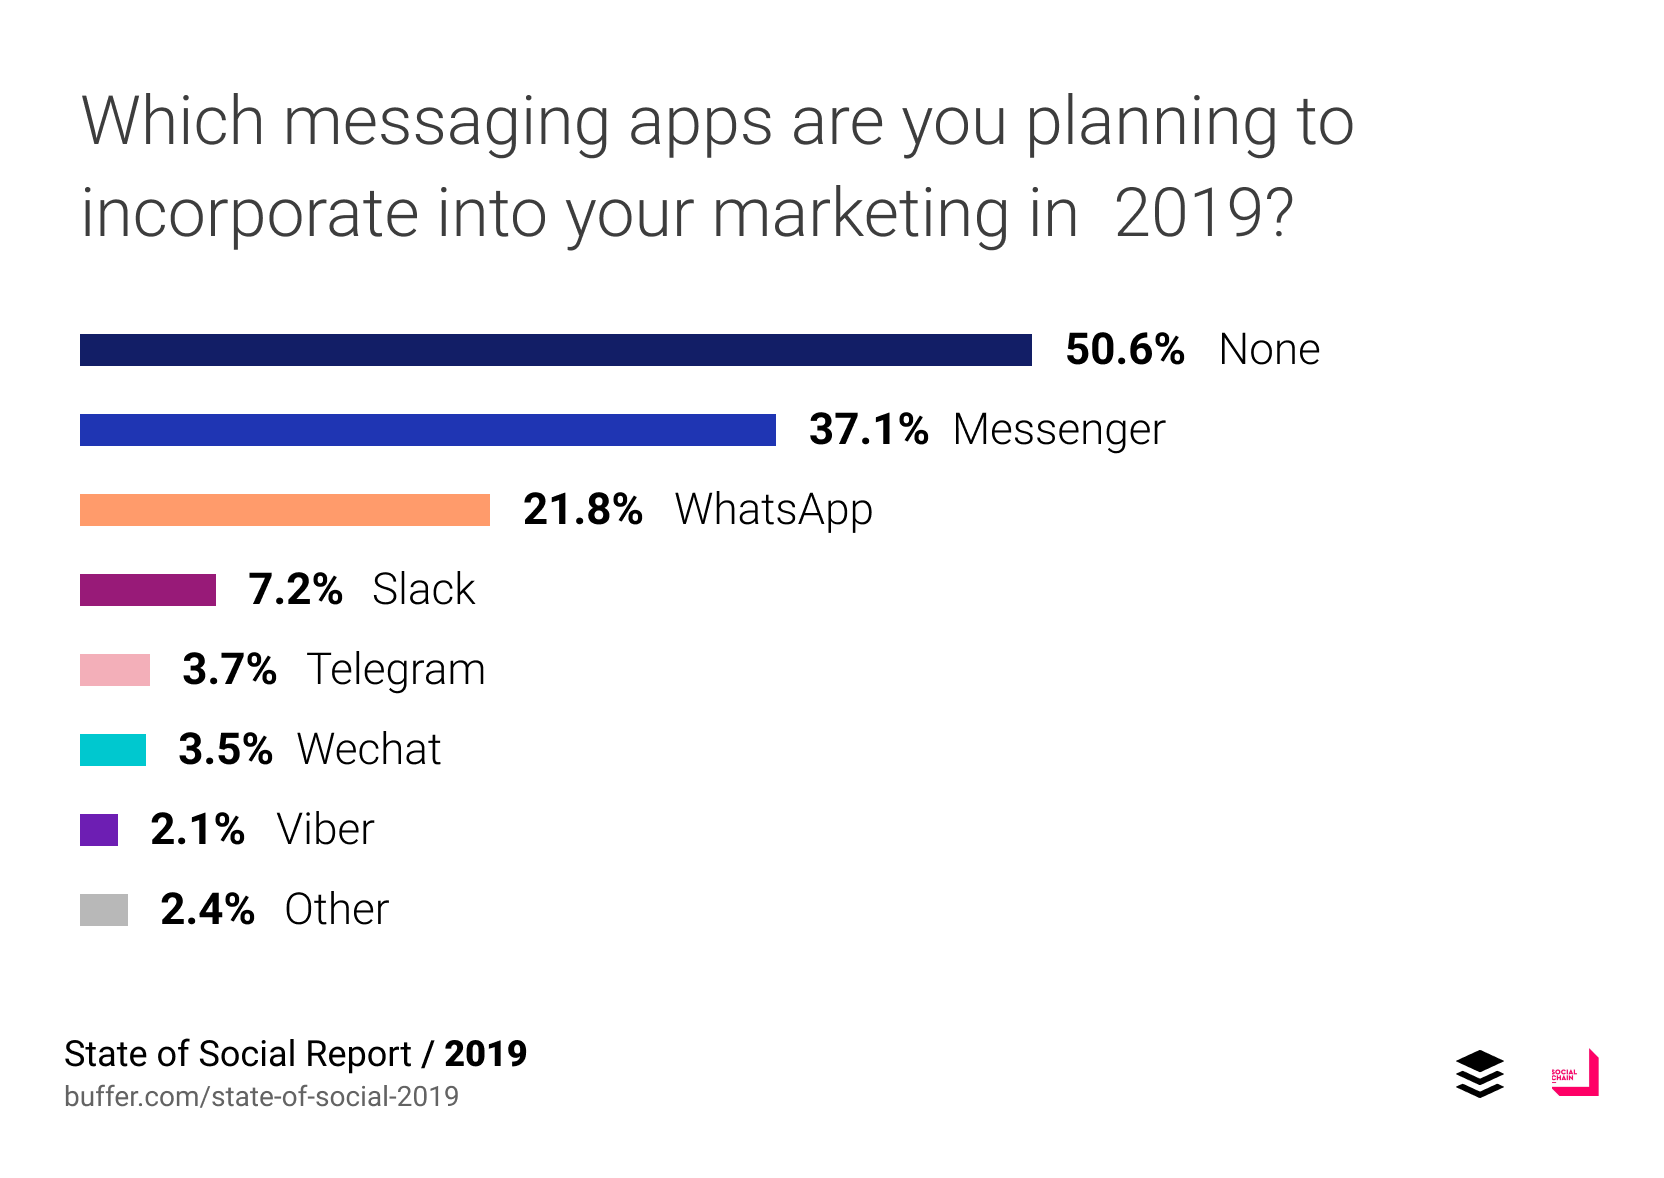 Какие мессенджеры вы планируете включить в свою стратегию маркетинга в 2019 году?